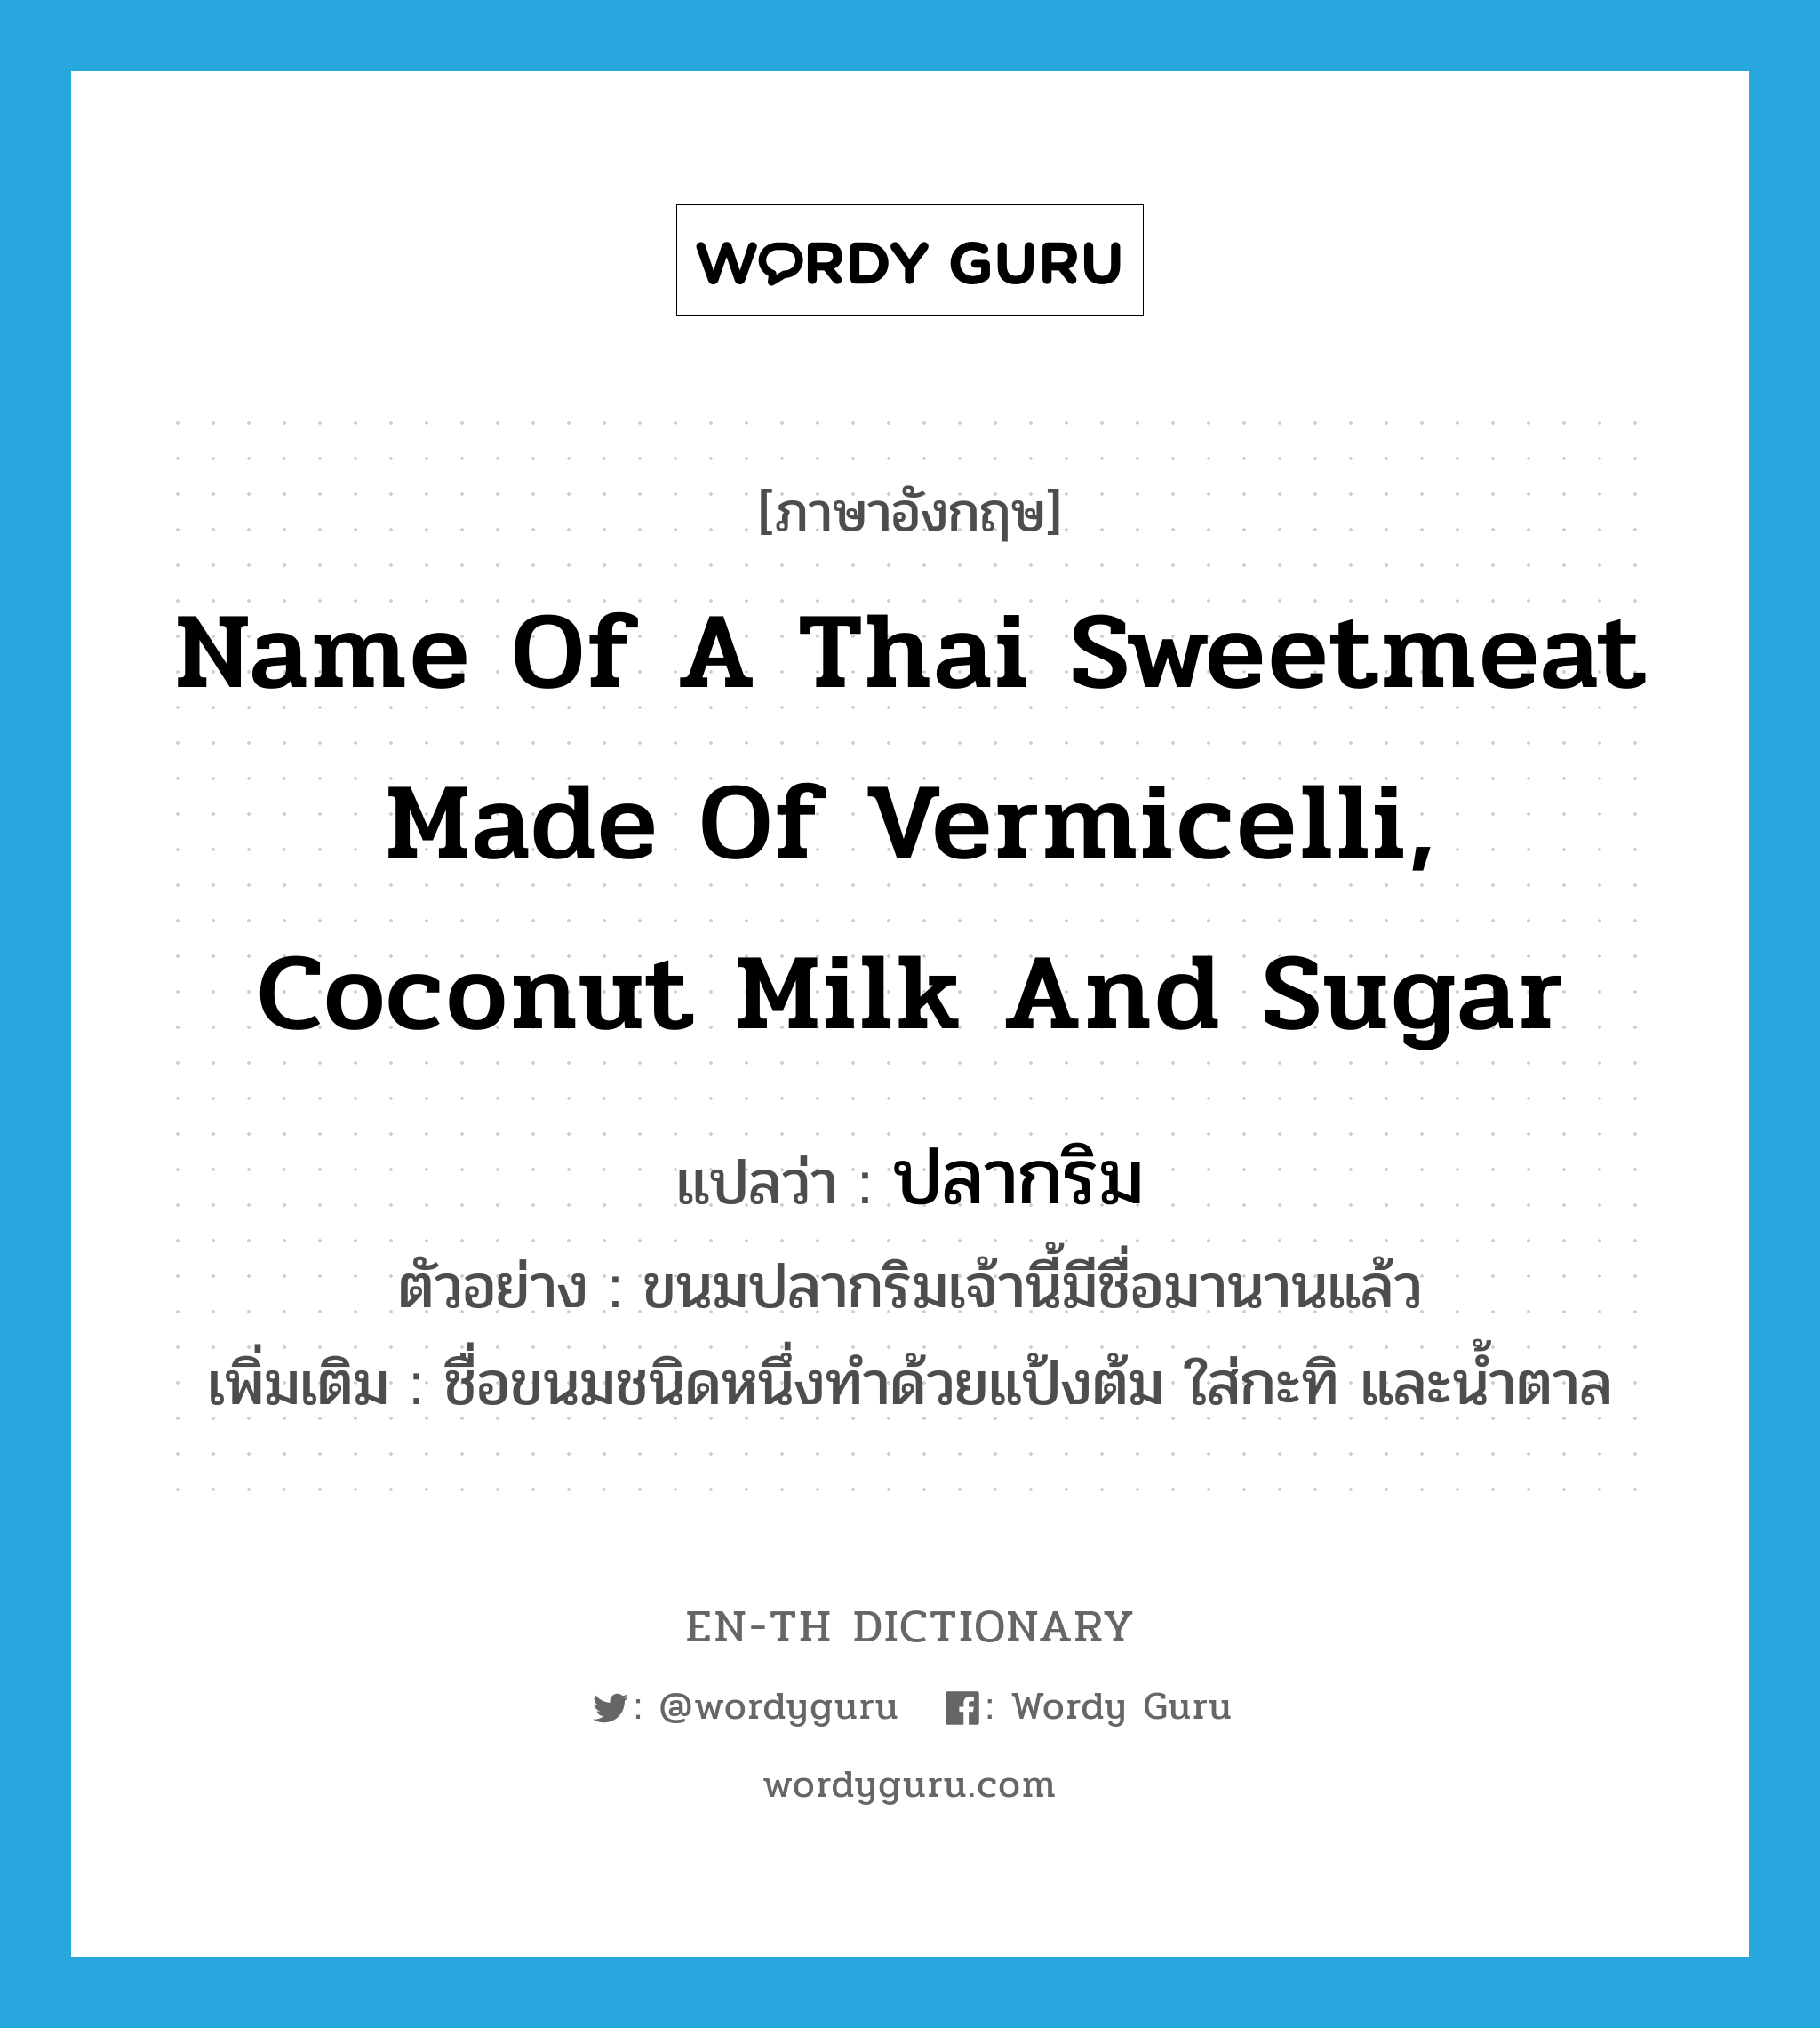 ปลากริม ภาษาอังกฤษ?, คำศัพท์ภาษาอังกฤษ ปลากริม แปลว่า name of a Thai sweetmeat made of vermicelli, coconut milk and sugar ประเภท N ตัวอย่าง ขนมปลากริมเจ้านี้มีชื่อมานานแล้ว เพิ่มเติม ชื่อขนมชนิดหนึ่งทำด้วยแป้งต้ม ใส่กะทิ และน้ำตาล หมวด N